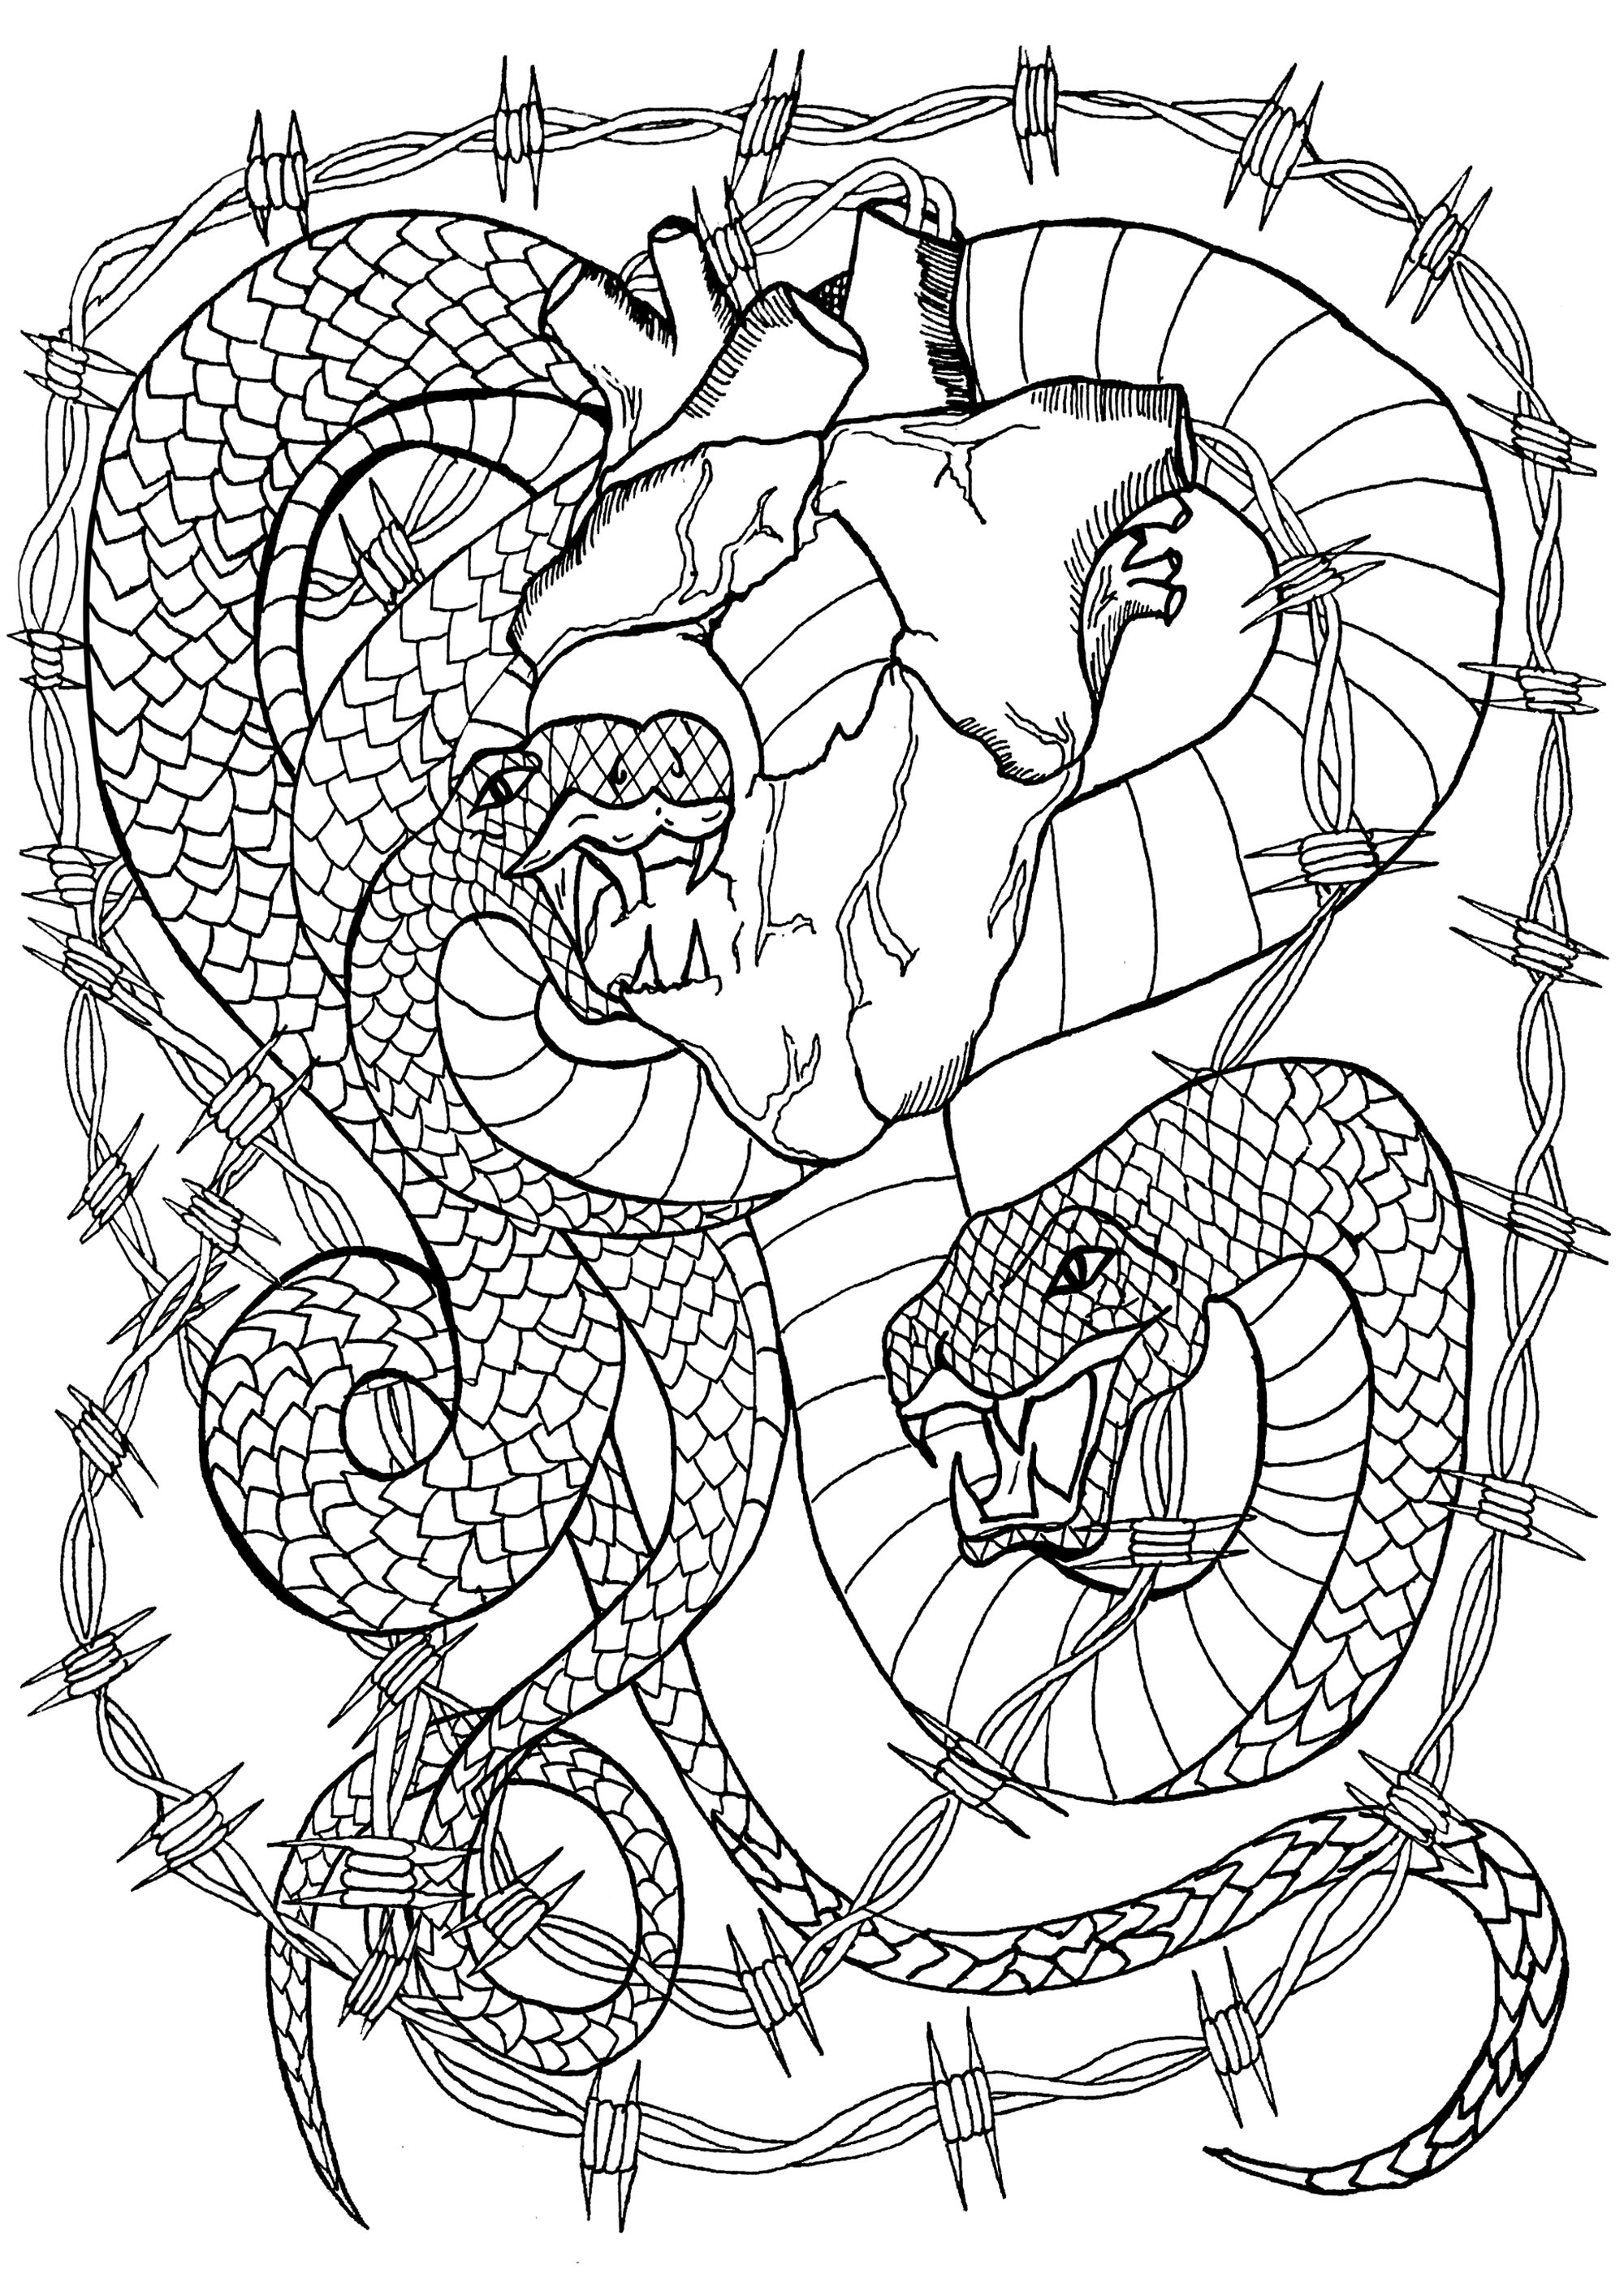 Duas cobras rodeadas de arame farpado devorando um coração ainda a bater, Artista : Lise